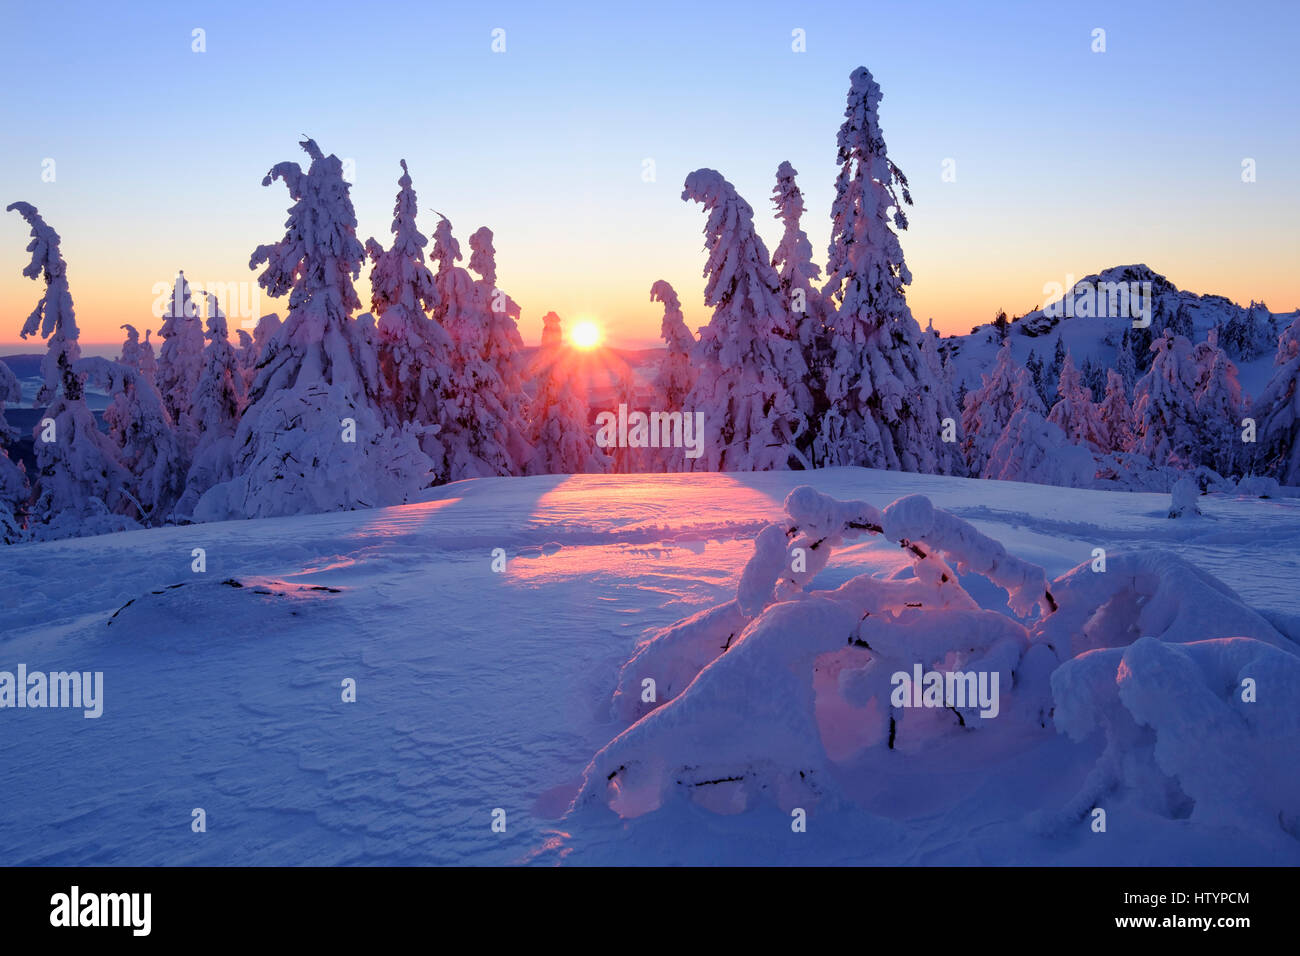 Sonnenuntergang, Arbermandl, schneebedeckten Fichten, Arber, natürliche Erhaltung Bayerischer Wald, untere Bayern, Bayern, Deutschland Stockfoto